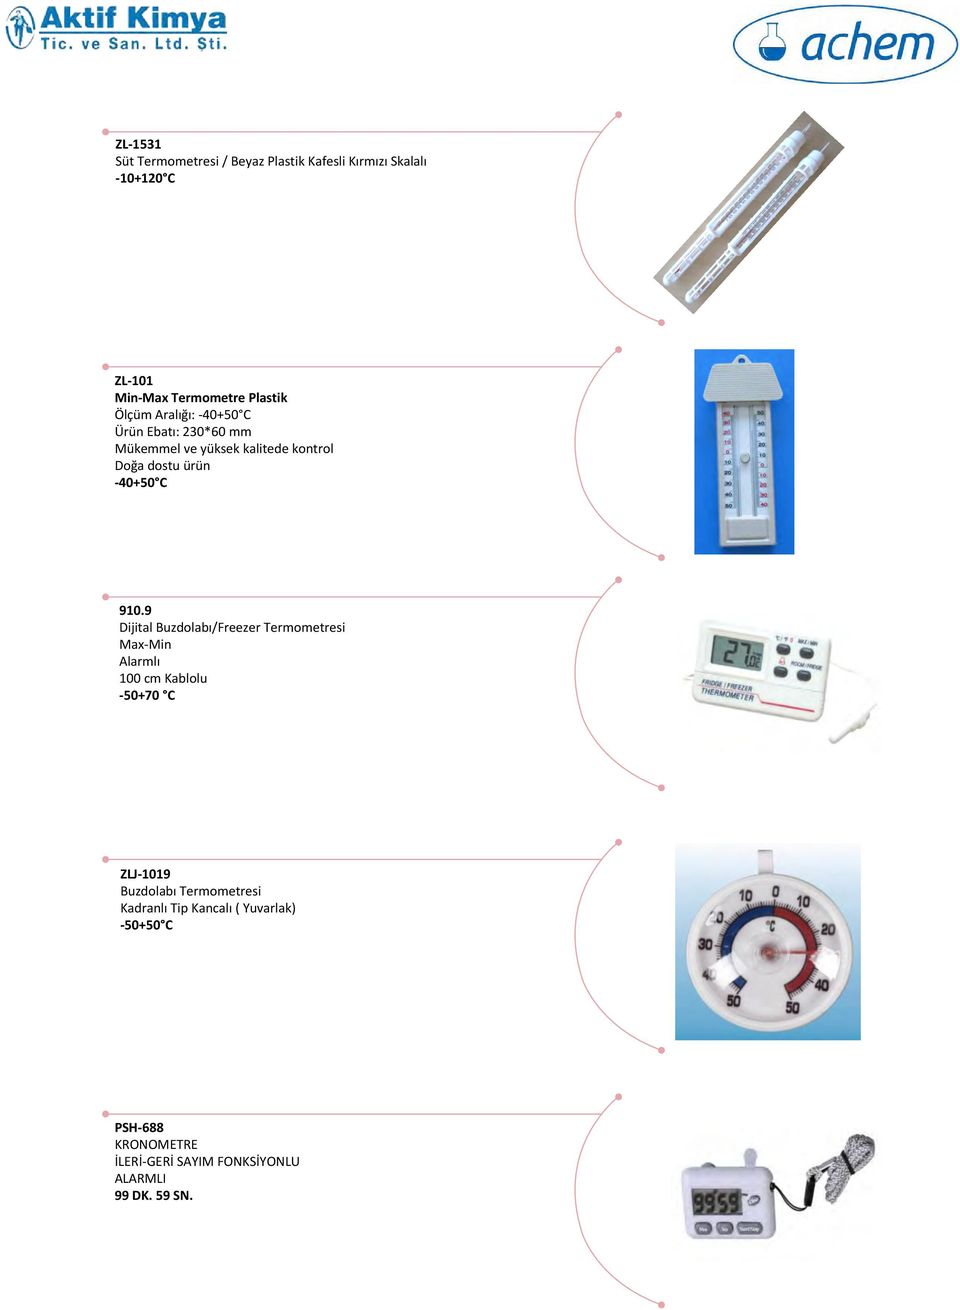 9 Dijital Buzdolabı/Freezer Termometresi Max-Min Alarmlı 100 cm Kablolu -50+70 C ZLJ-1019 Buzdolabı